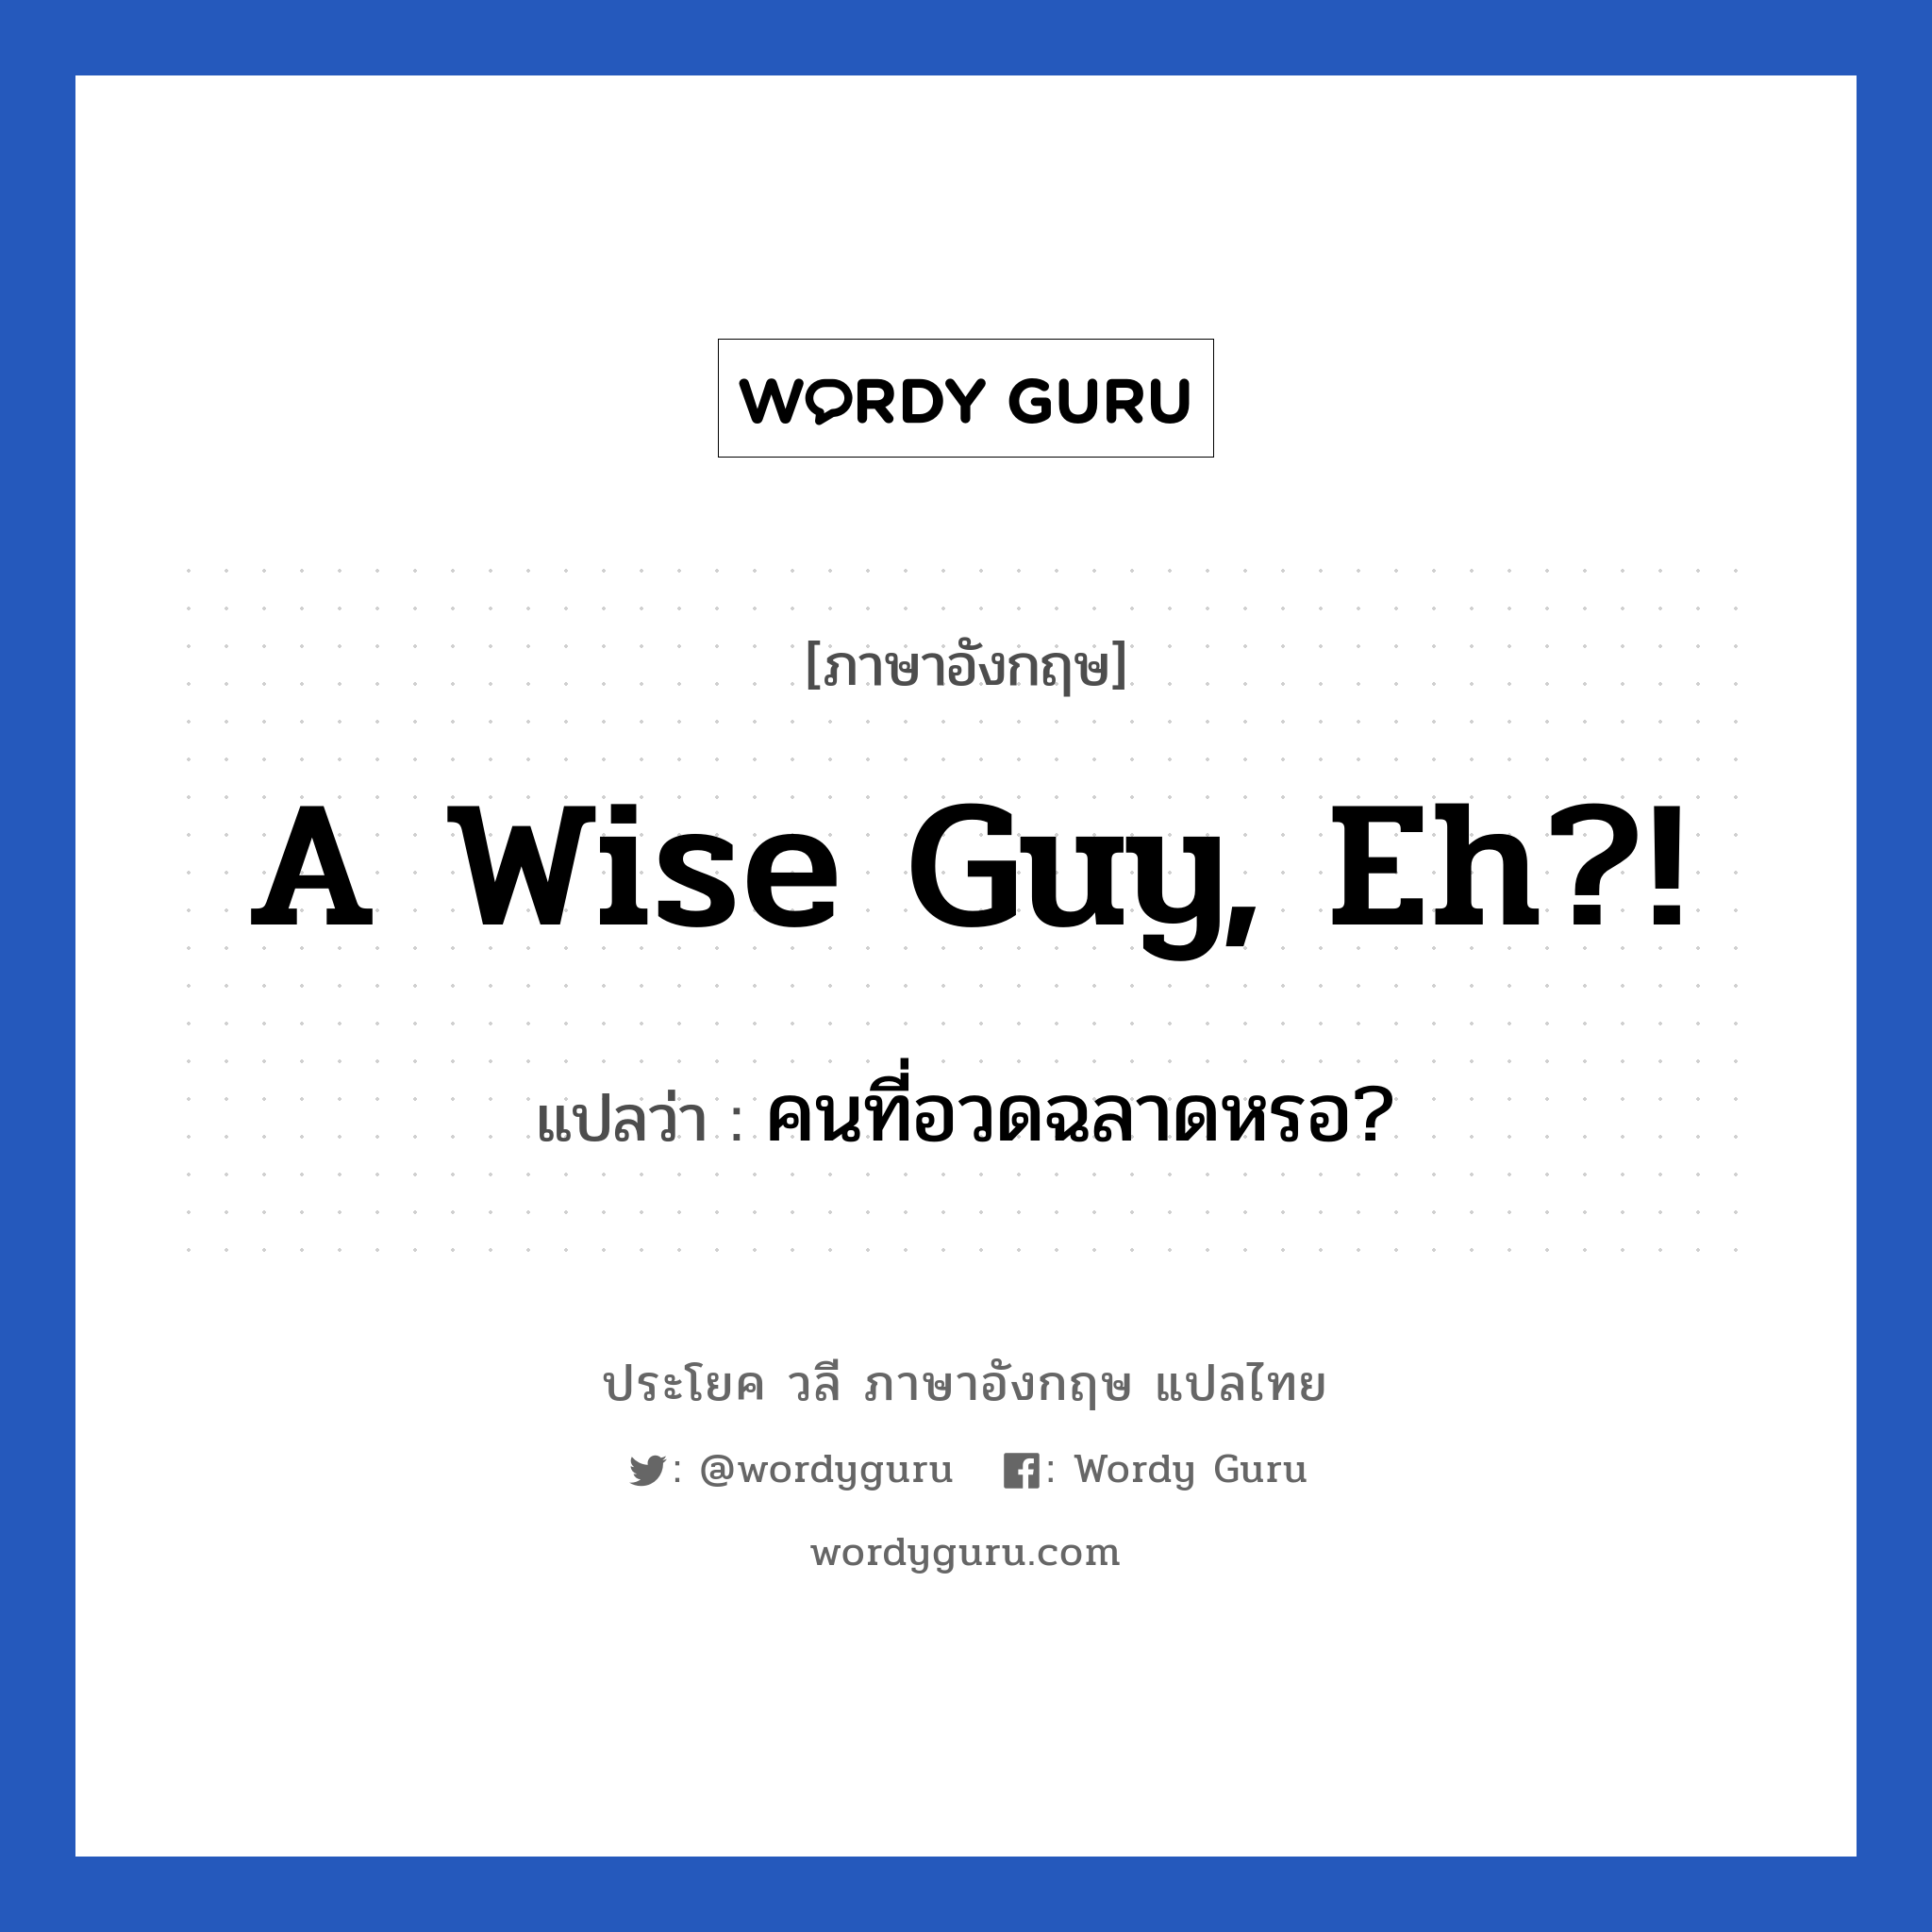 คนที่อวดฉลาดหรอ? ภาษาอังกฤษ?, วลีภาษาอังกฤษ คนที่อวดฉลาดหรอ? แปลว่า A wise guy, eh?!